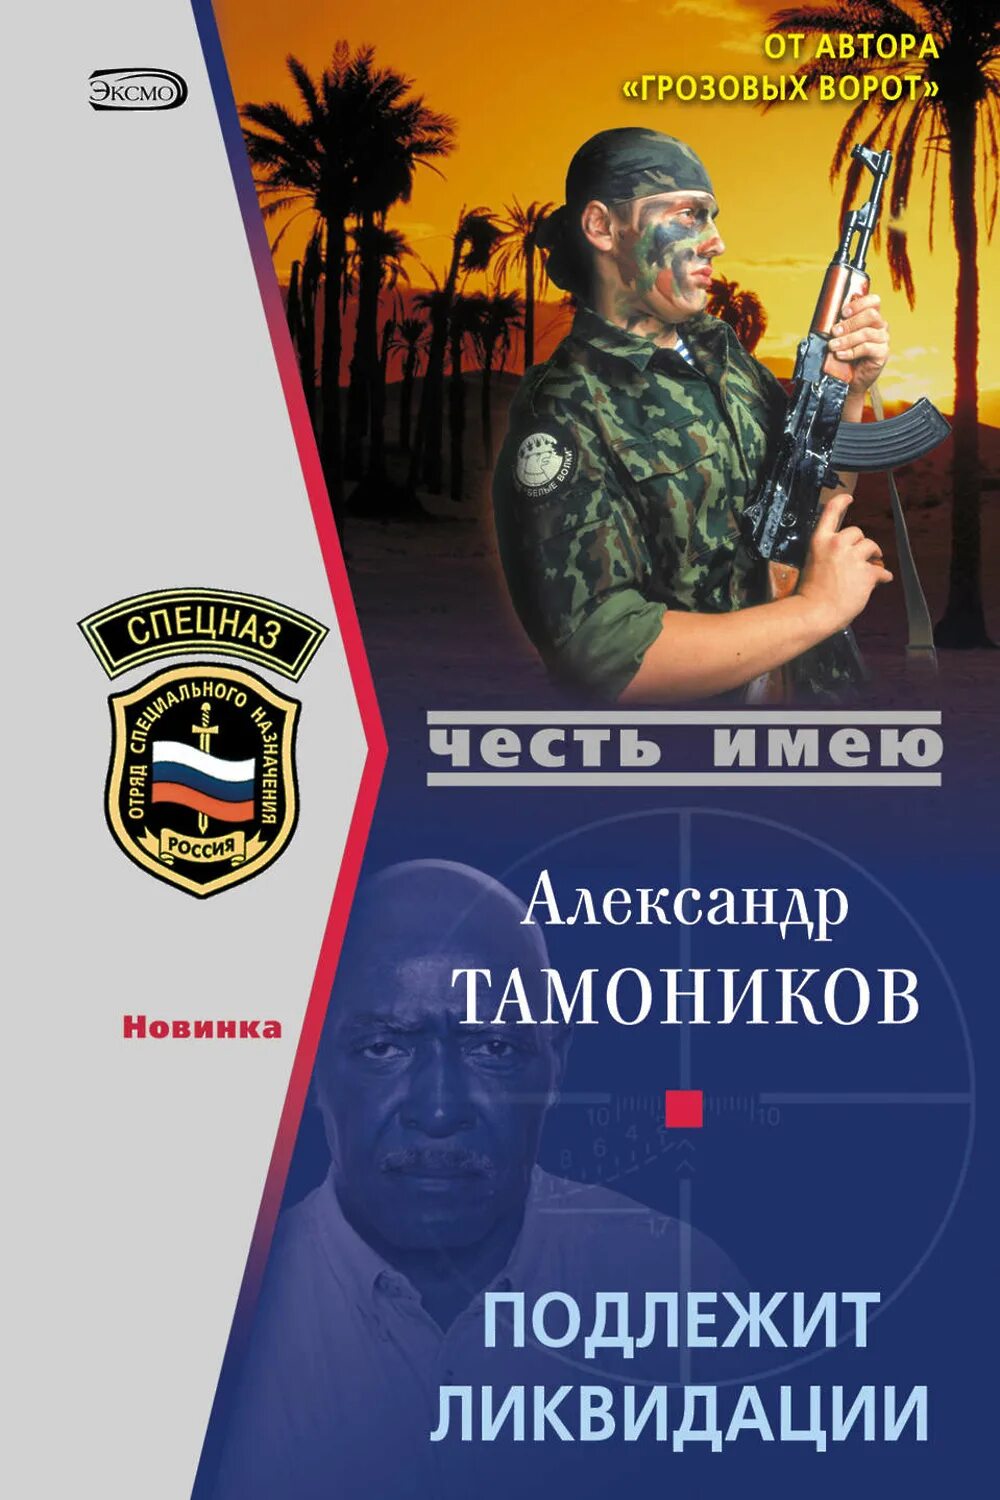 Авторы книг российских боевиков. Подлежит ликвидации Тамоников.